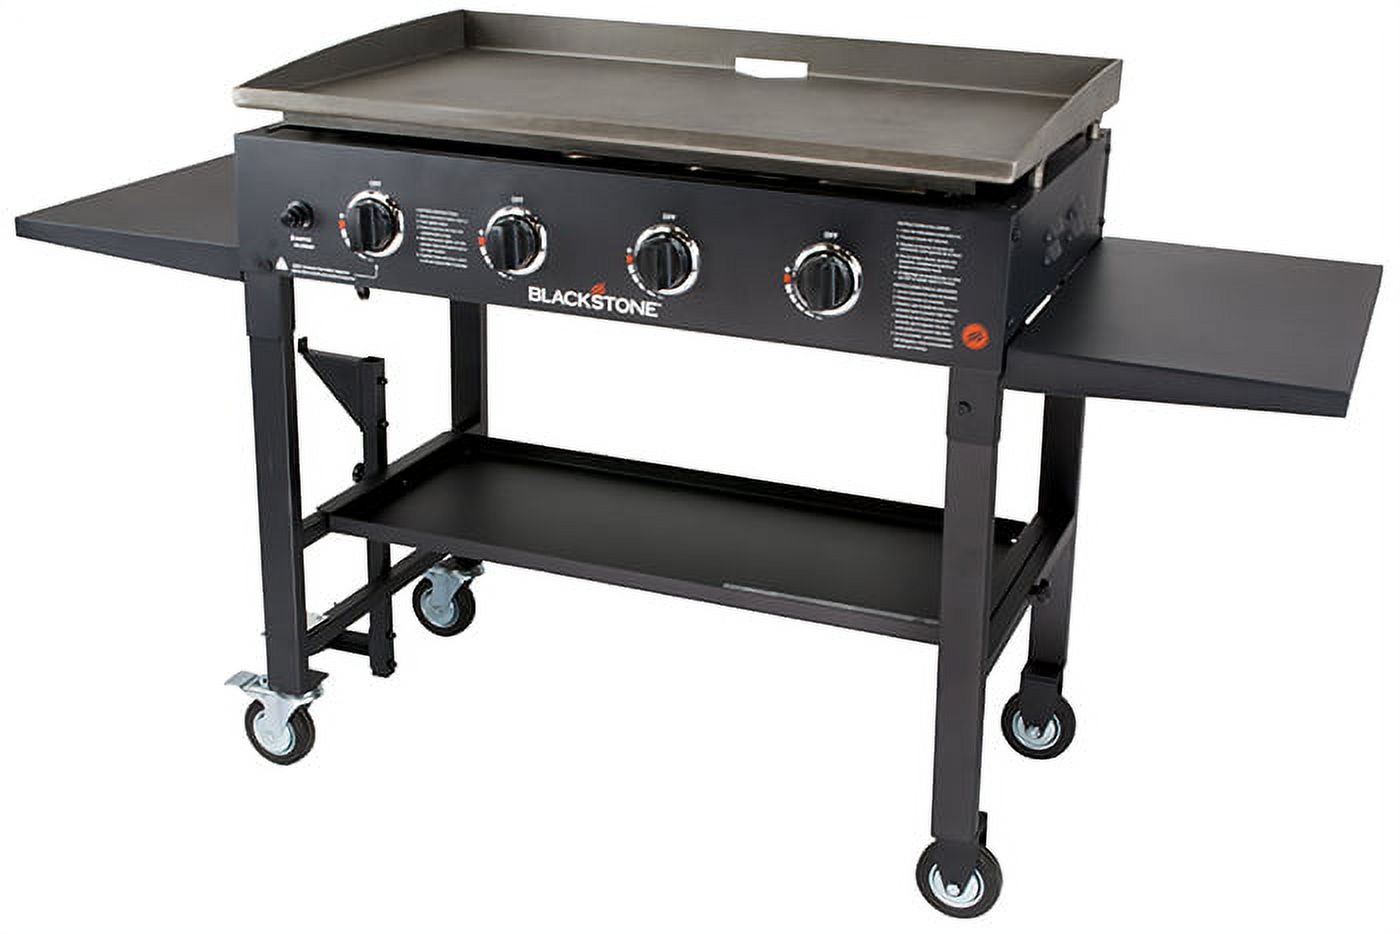 Blackstone 4-Burner 36" Griddle Cooking Station w/ Rear Grease Management - image 1 of 9